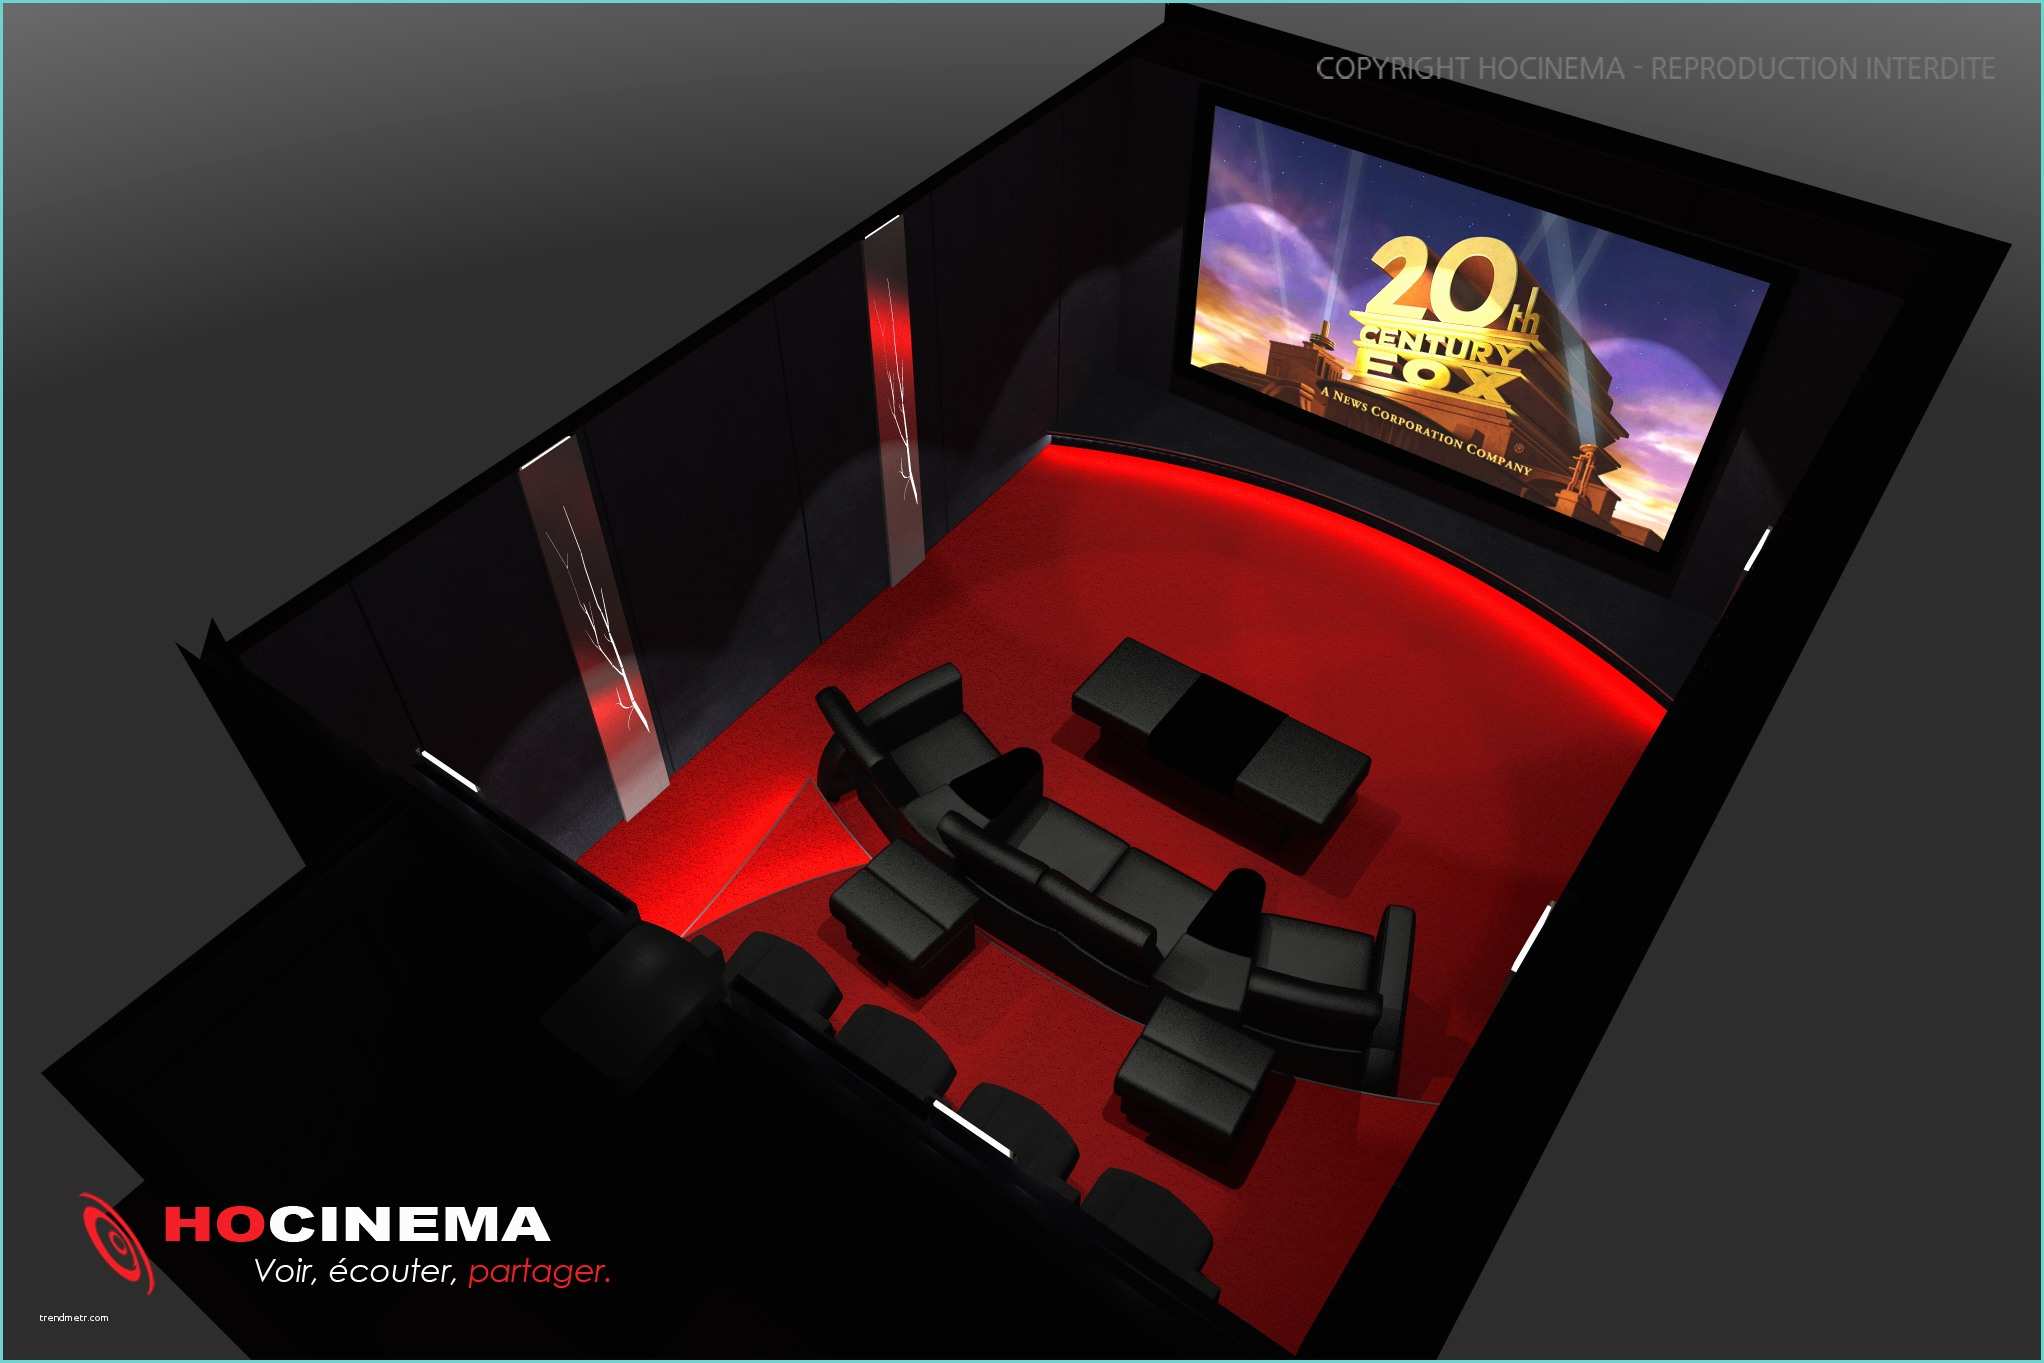 Salle Cinema Maison Le Concept 08a Une Salle Cinéma Maison Réalisée Sur Mesure